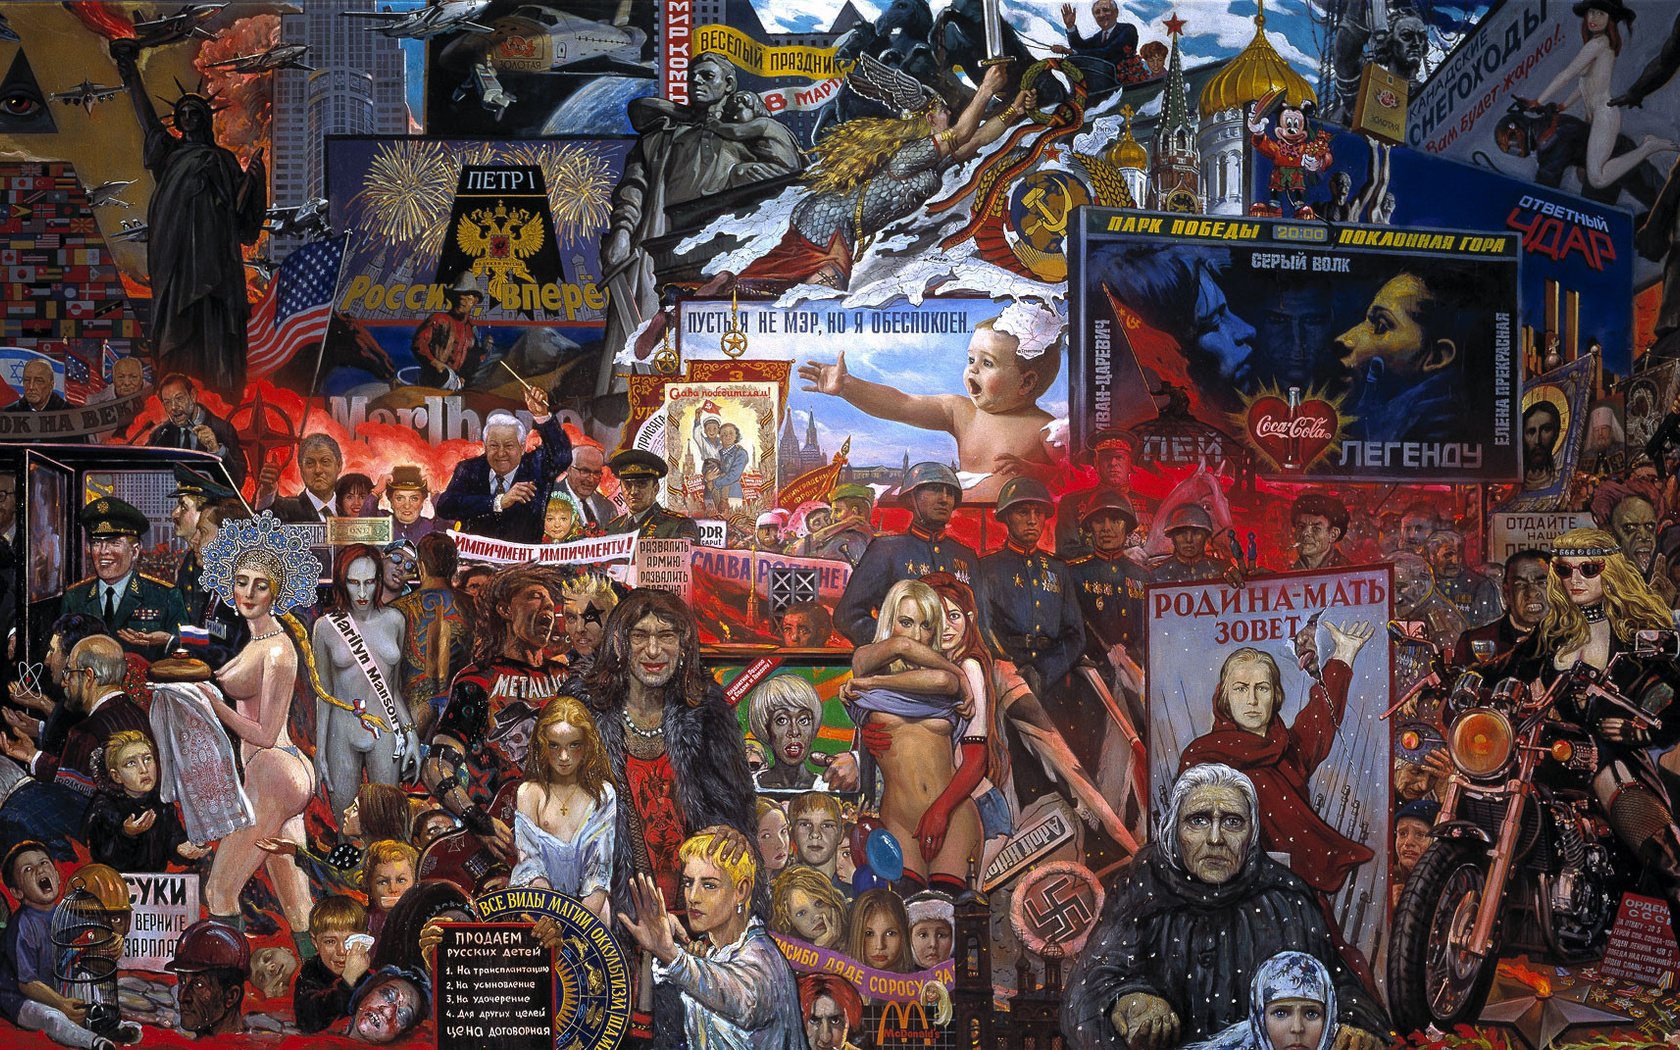 Рынок нашей демократии картина Илья Глазунов 1999